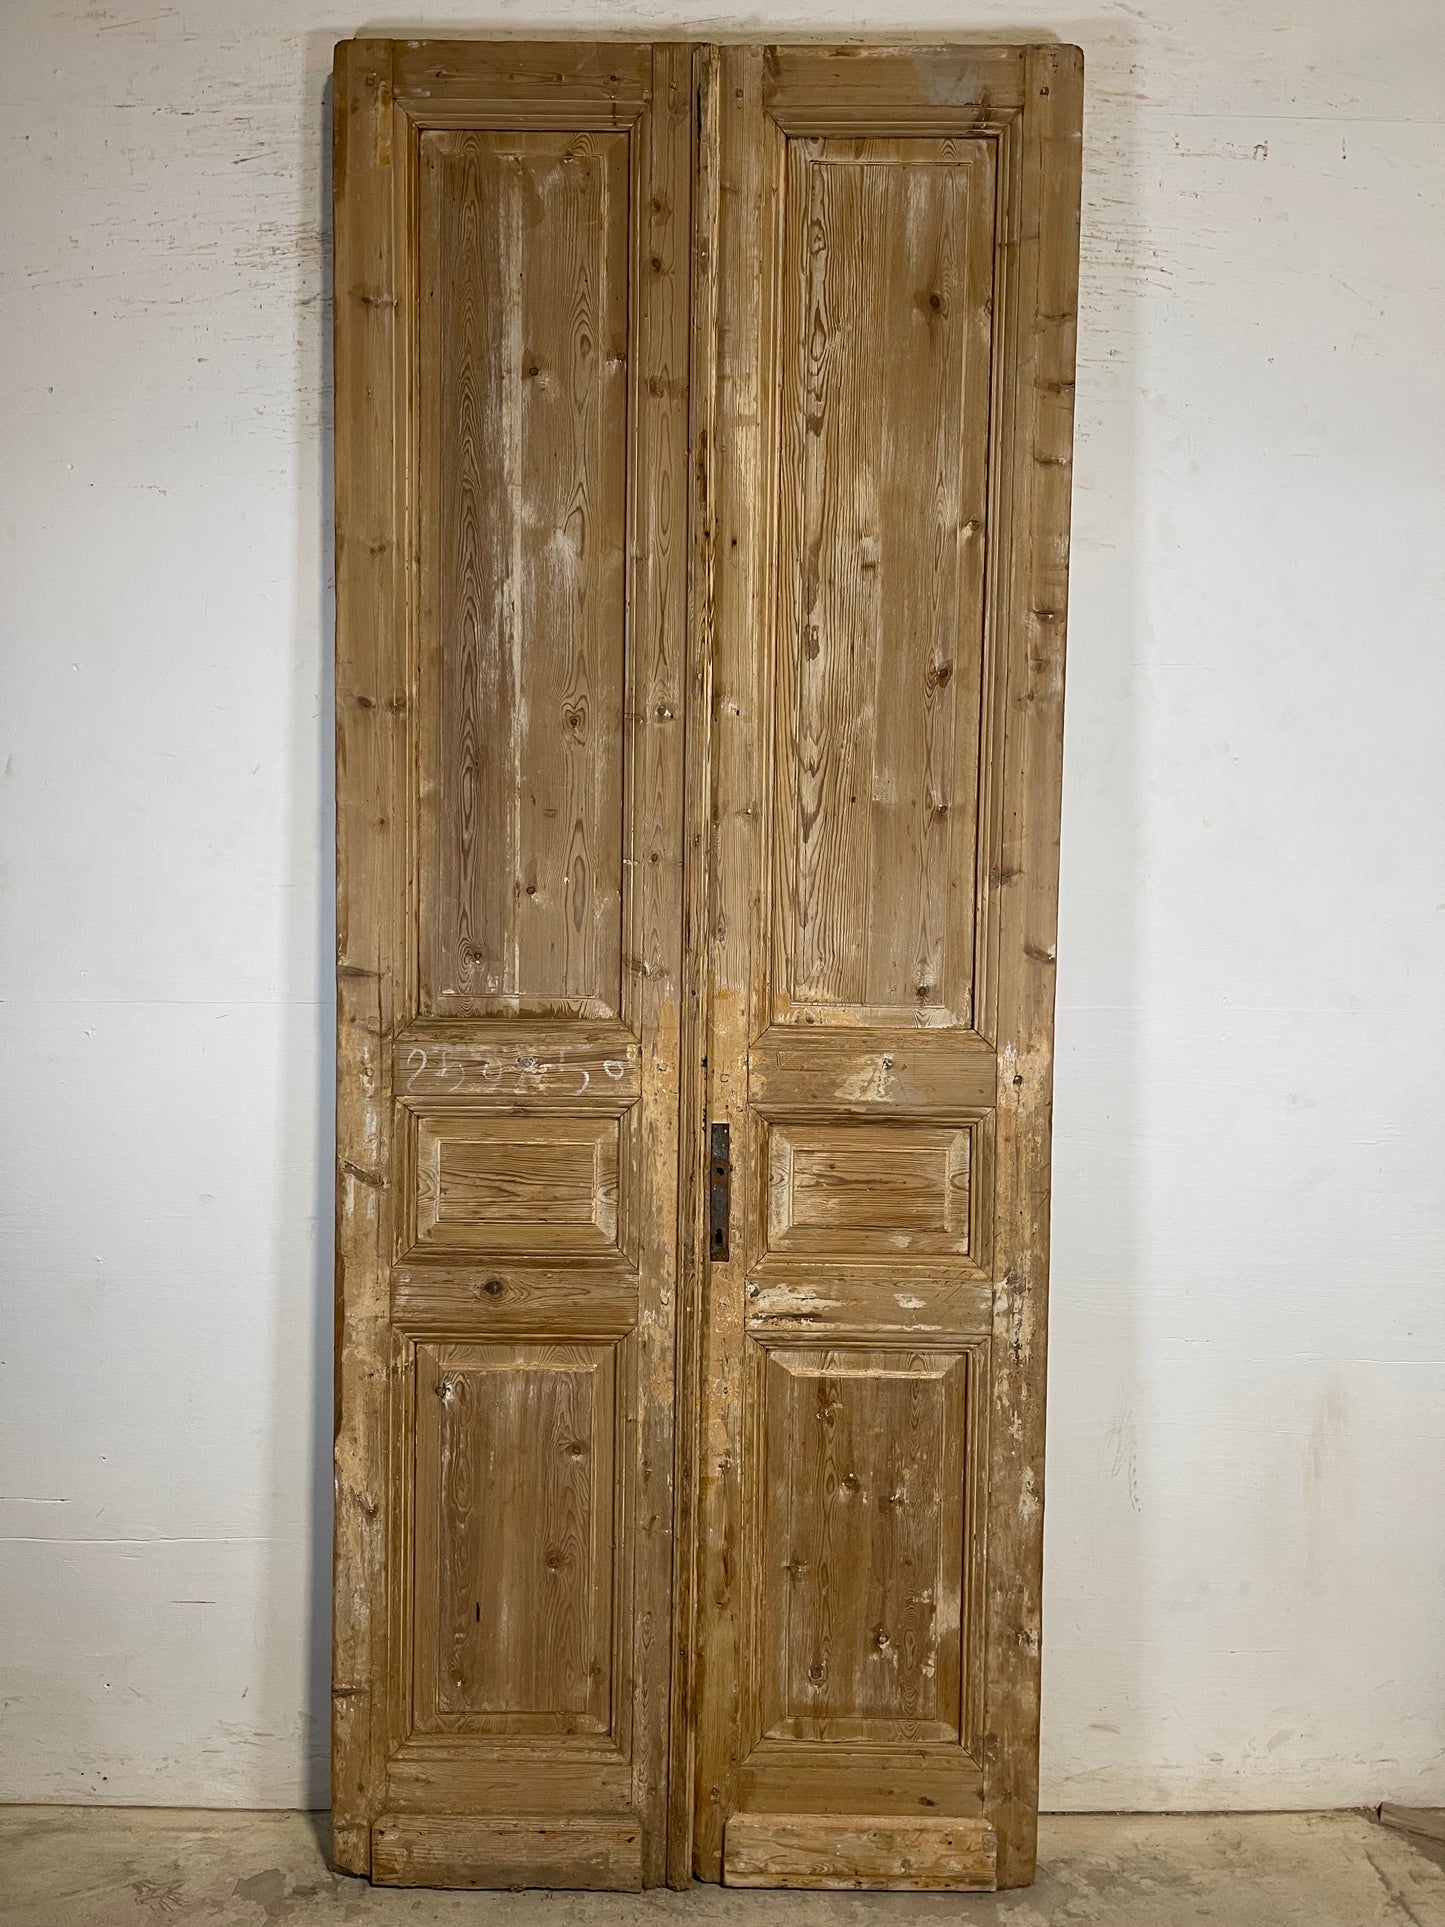 Antique French panel Doors (98.5x38.75) K733